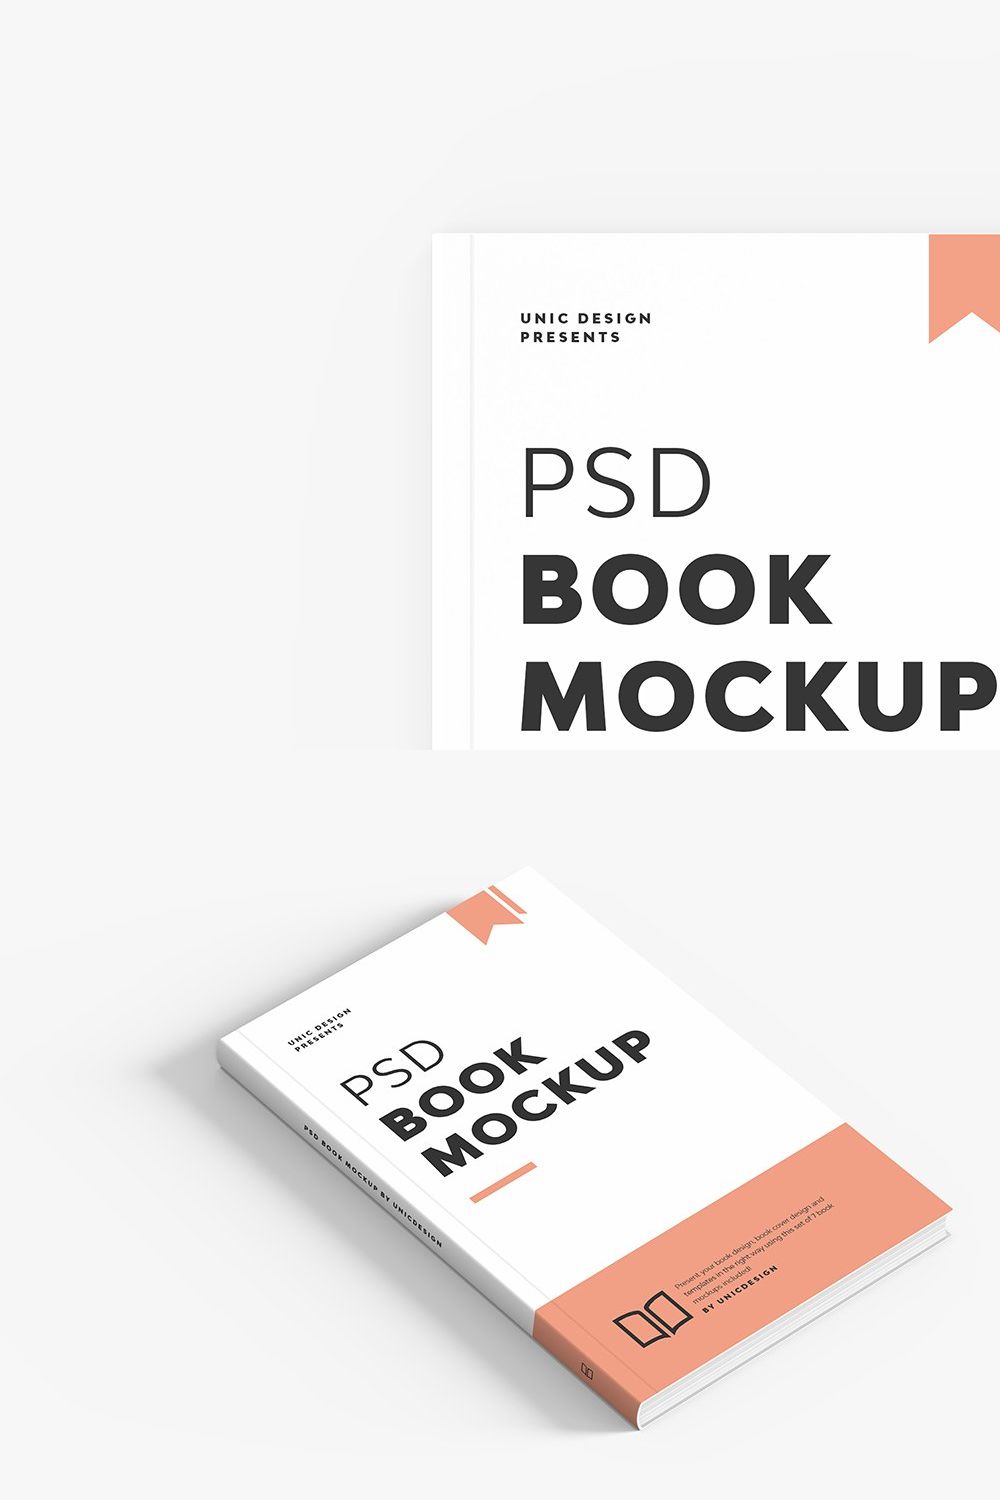 Pocket Book Mockup pinterest preview image.